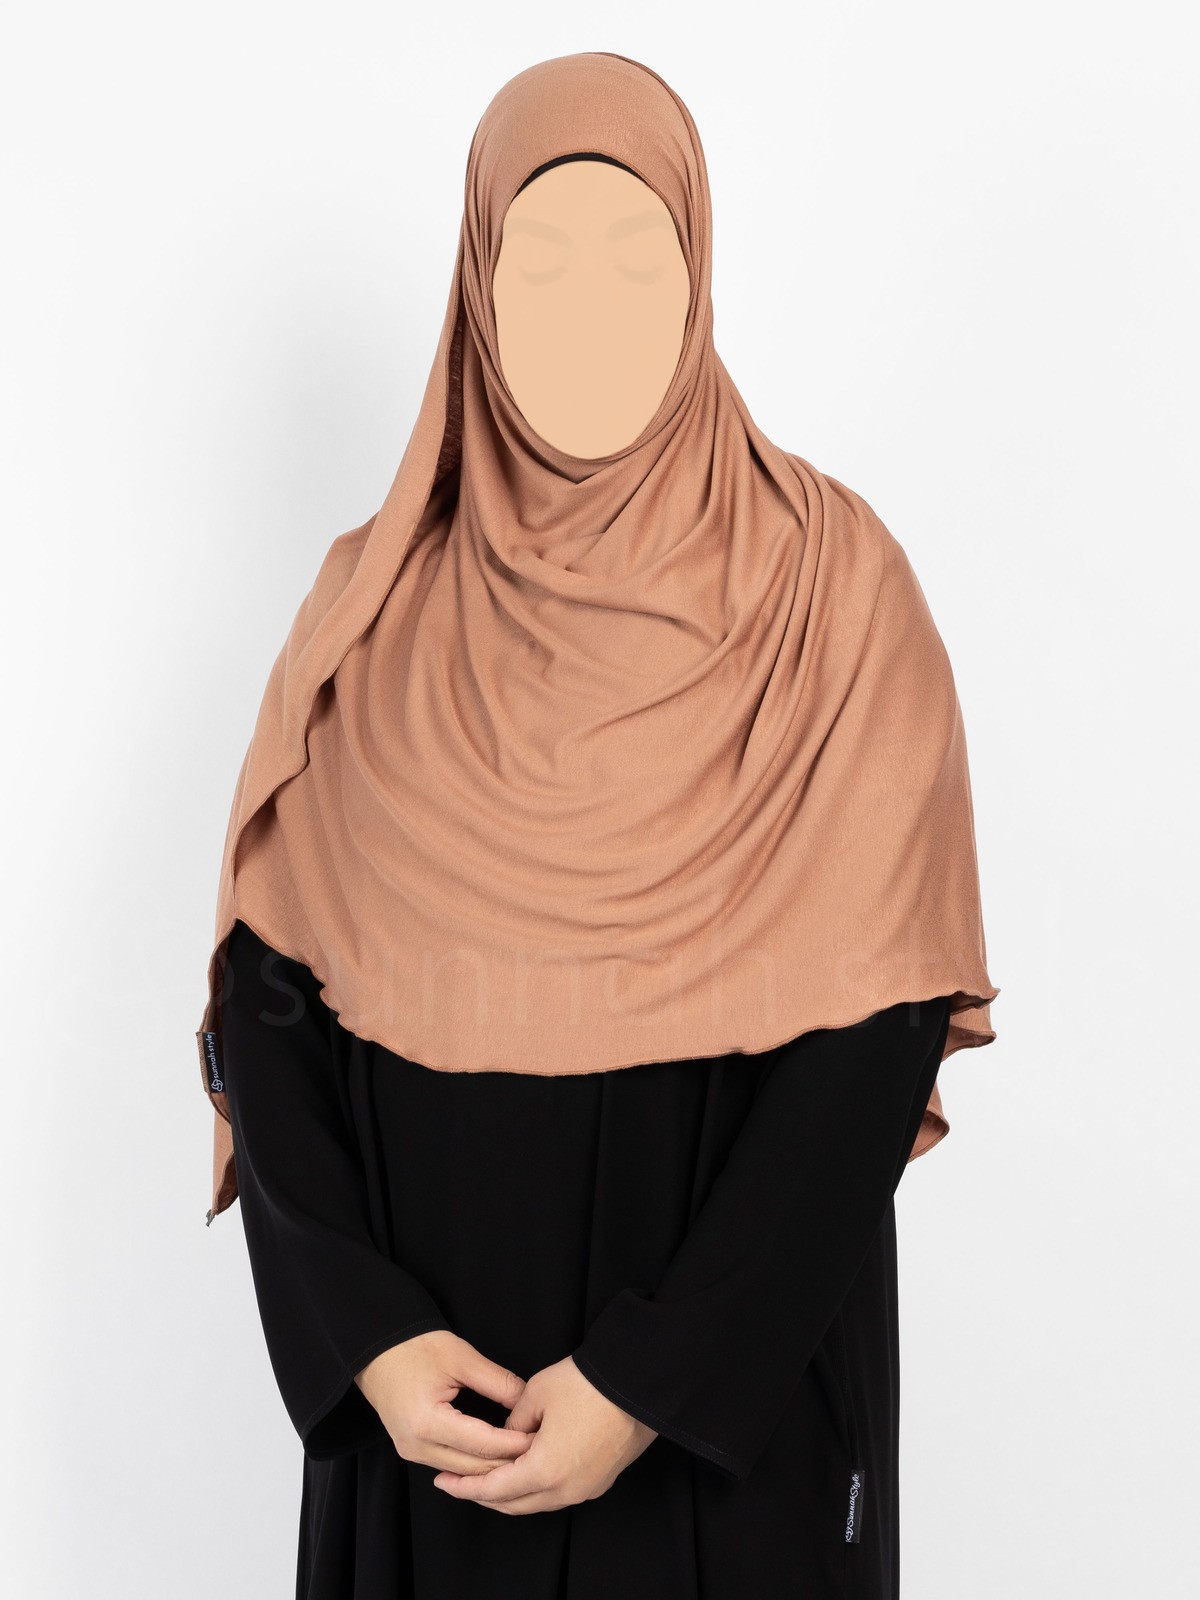 Sunnah Style Urban Shayla (Soft Jersey) - Large (Terracotta)